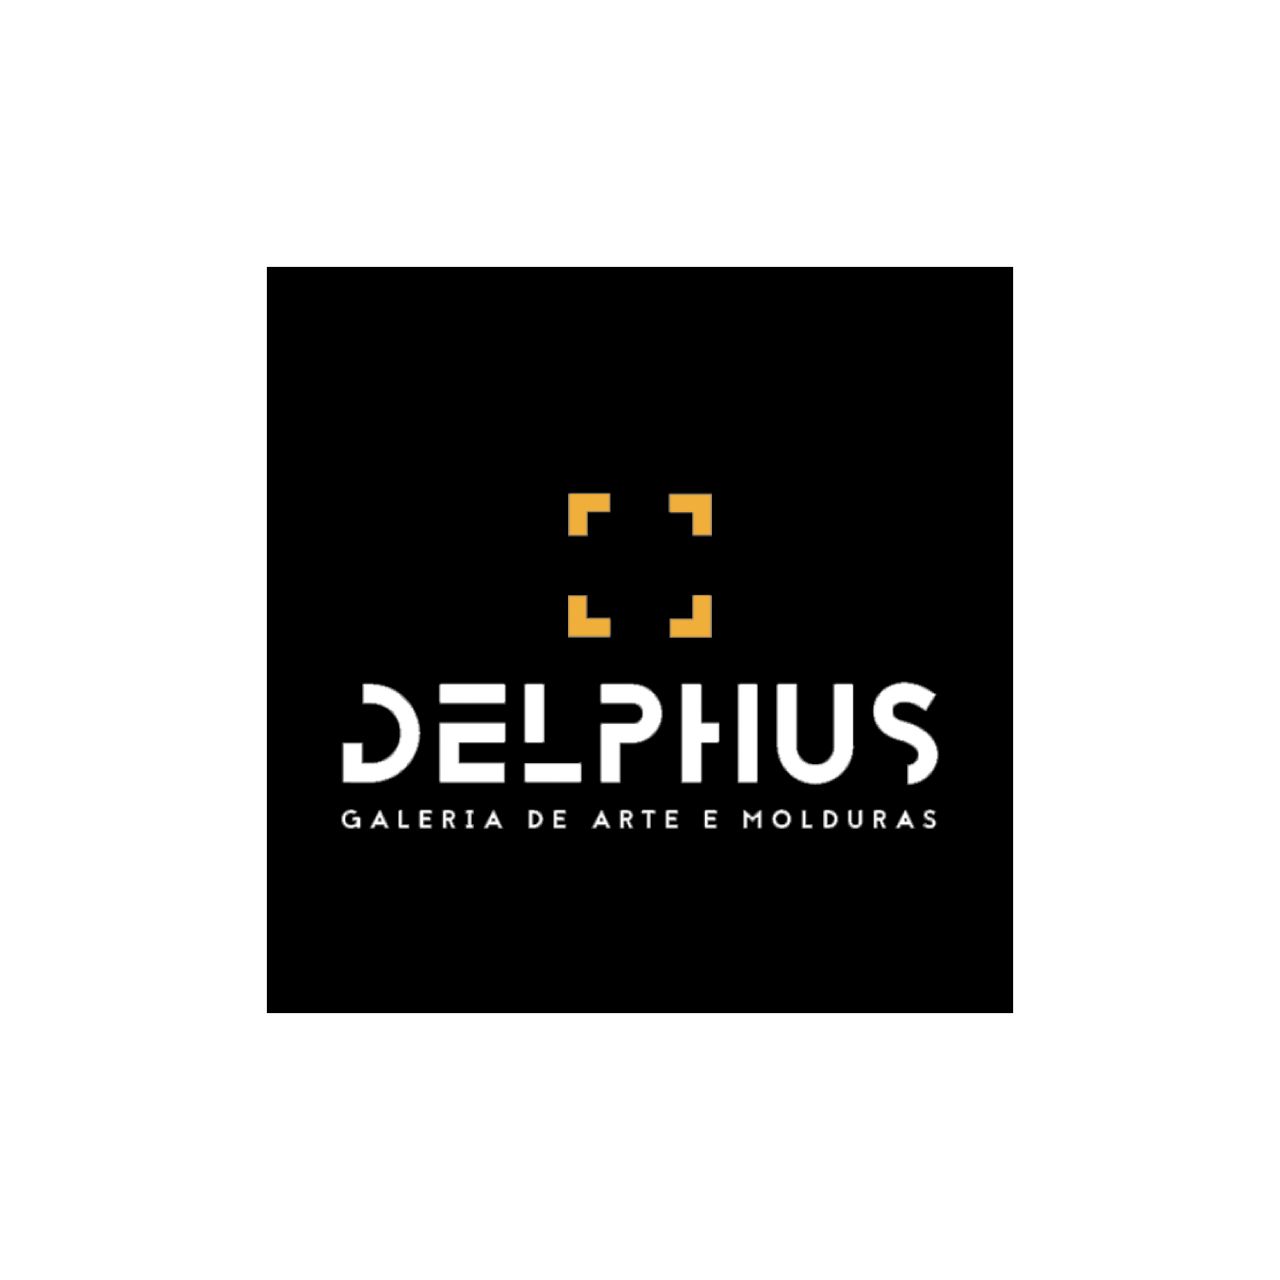 Delphus